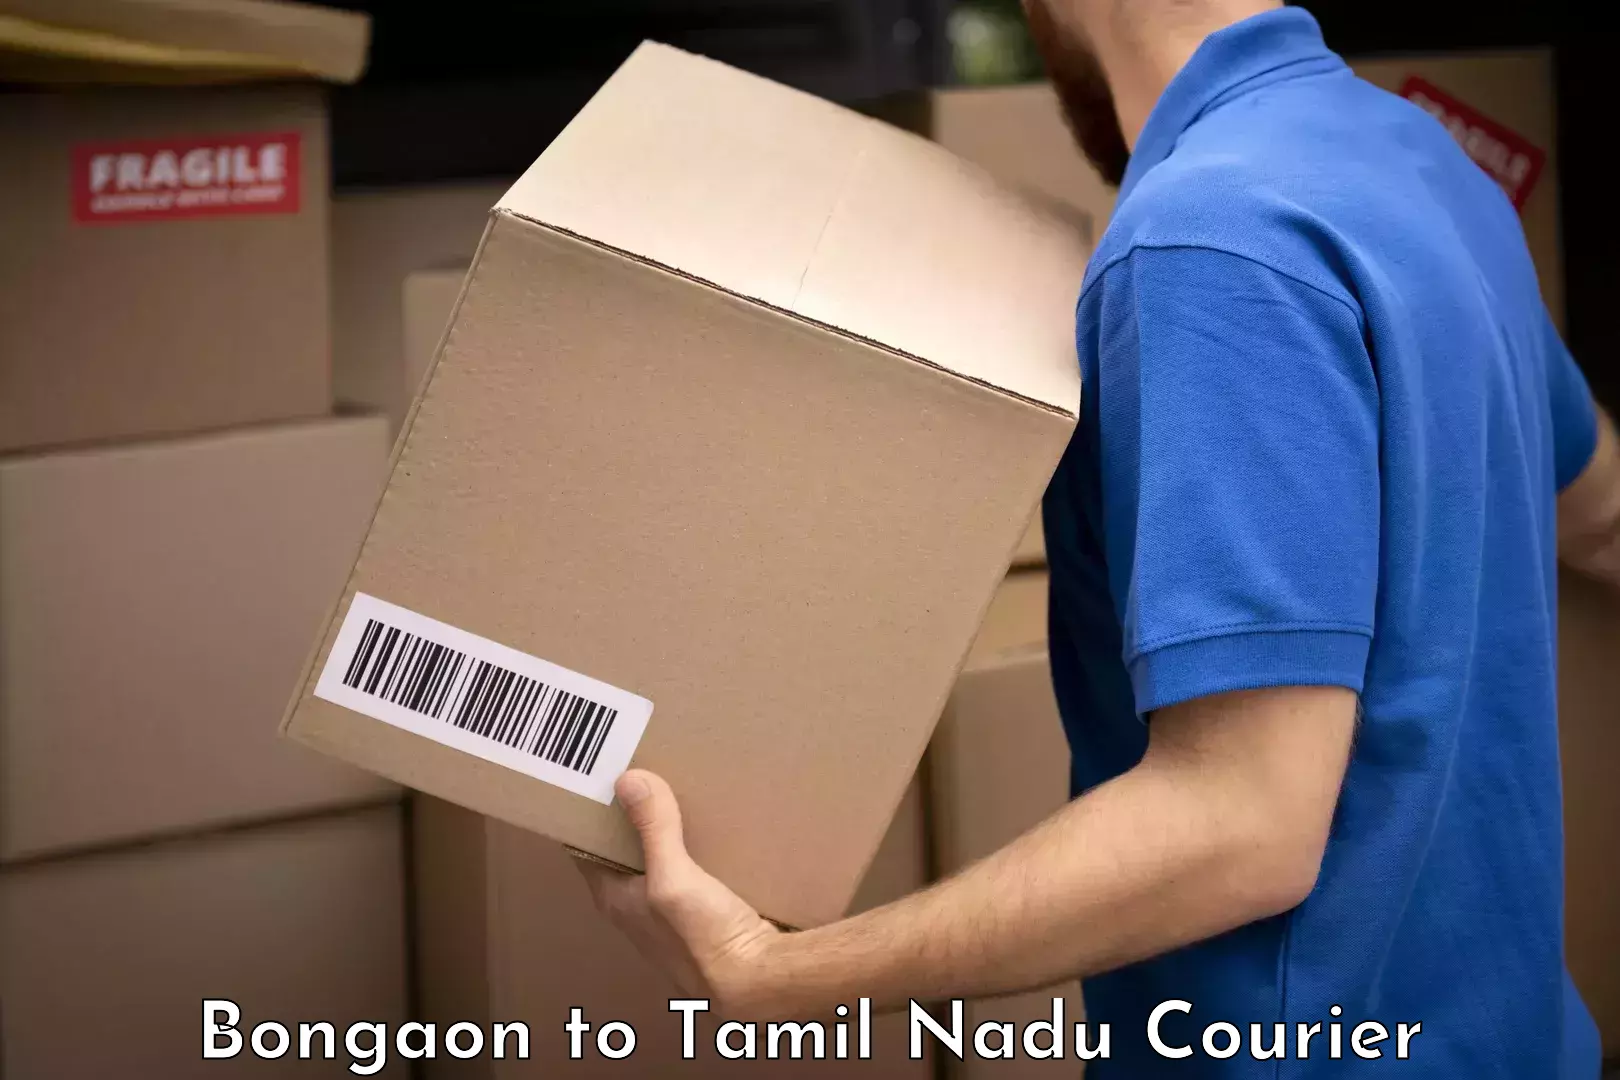 Baggage shipping experts Bongaon to Thiruvarur